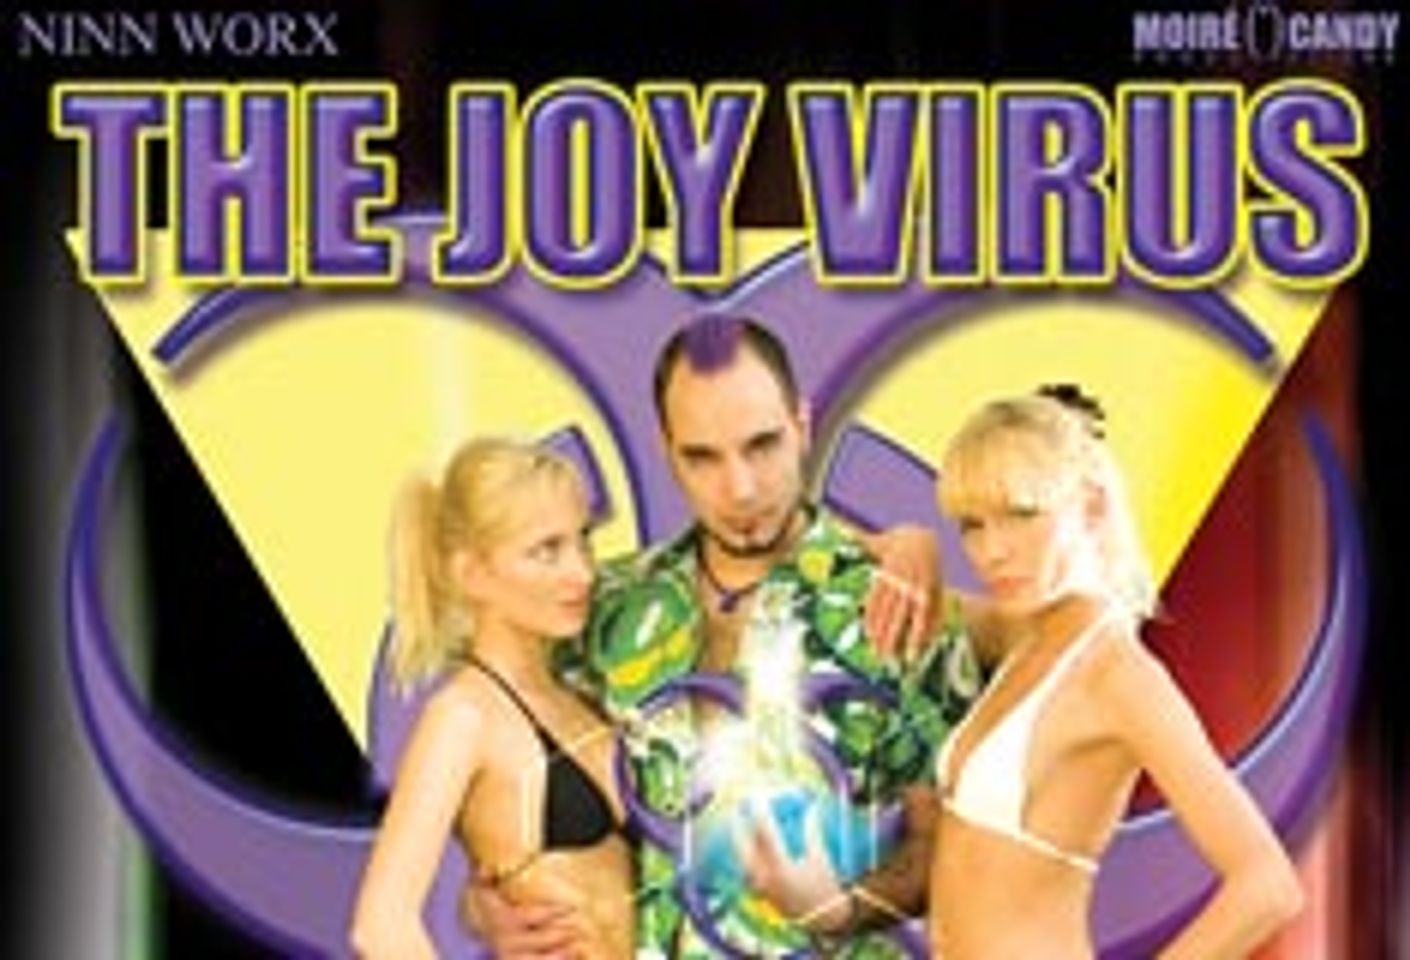 Moiré Candy and Ninn Worx Spread <i>The Joy Virus</i>